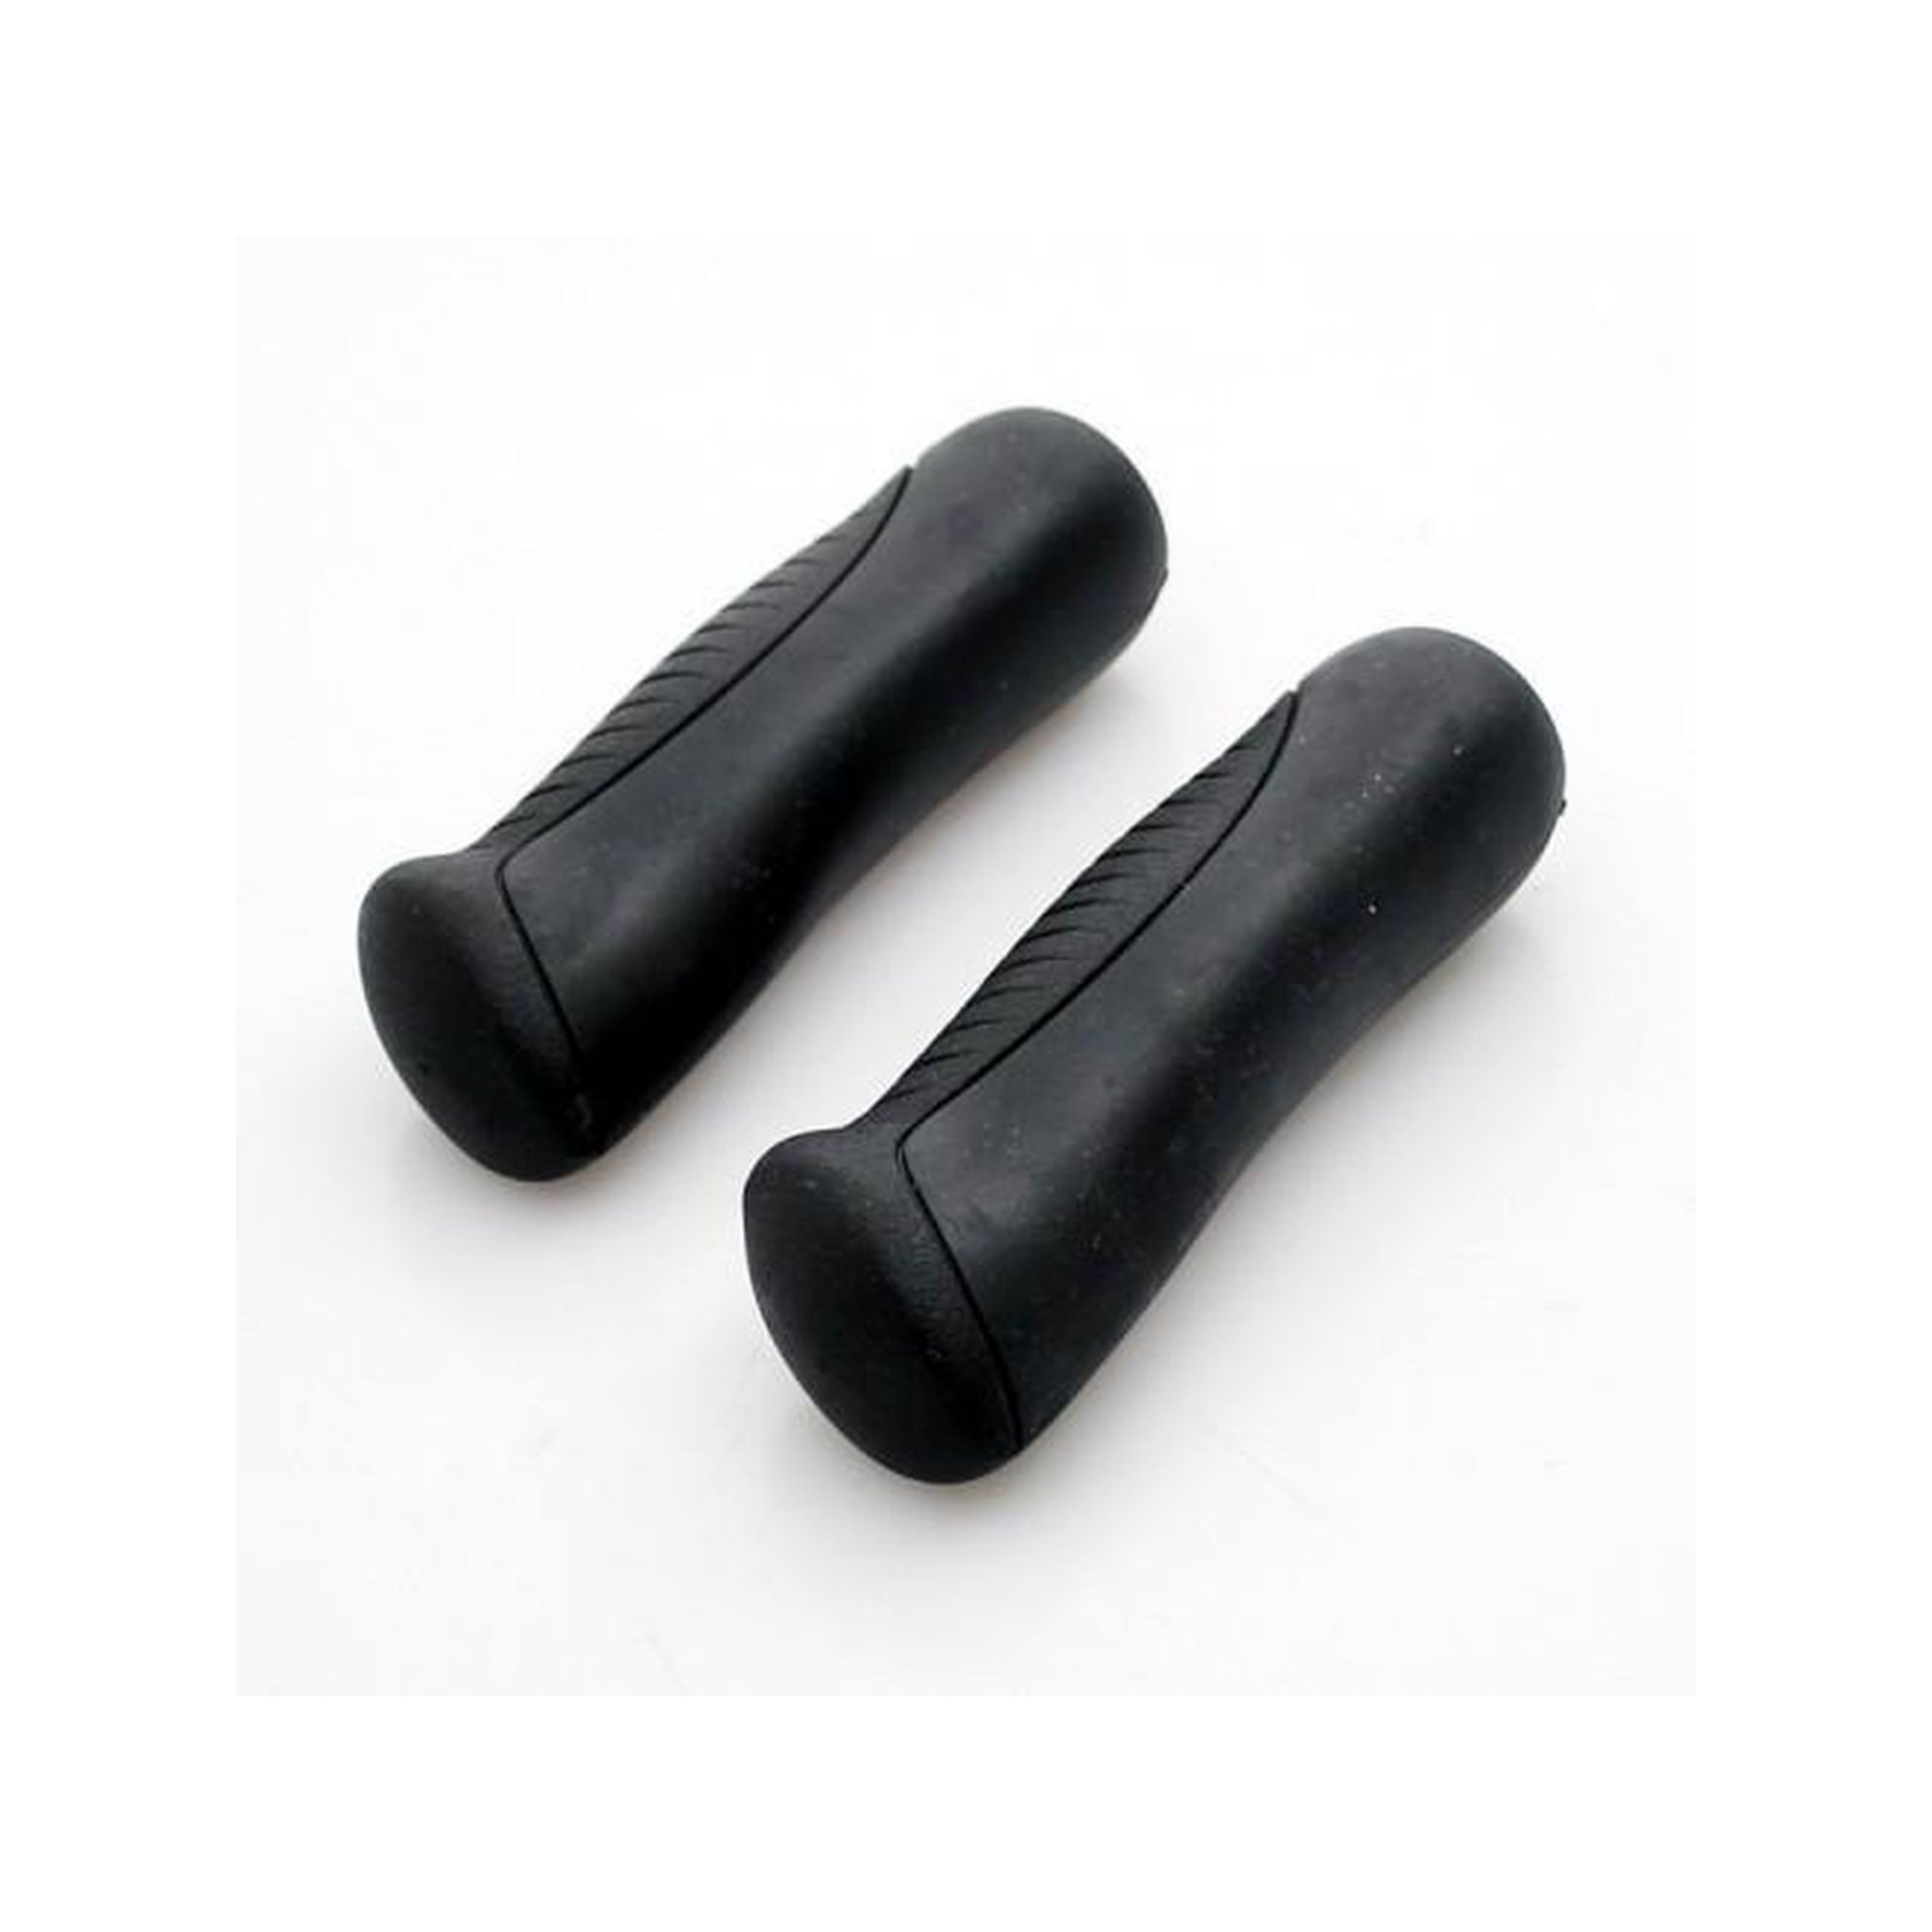 Widek Handvatten Ergo hybride zwart lengte: 130/130mm, 6 stuks (werkplaatsverpakking)